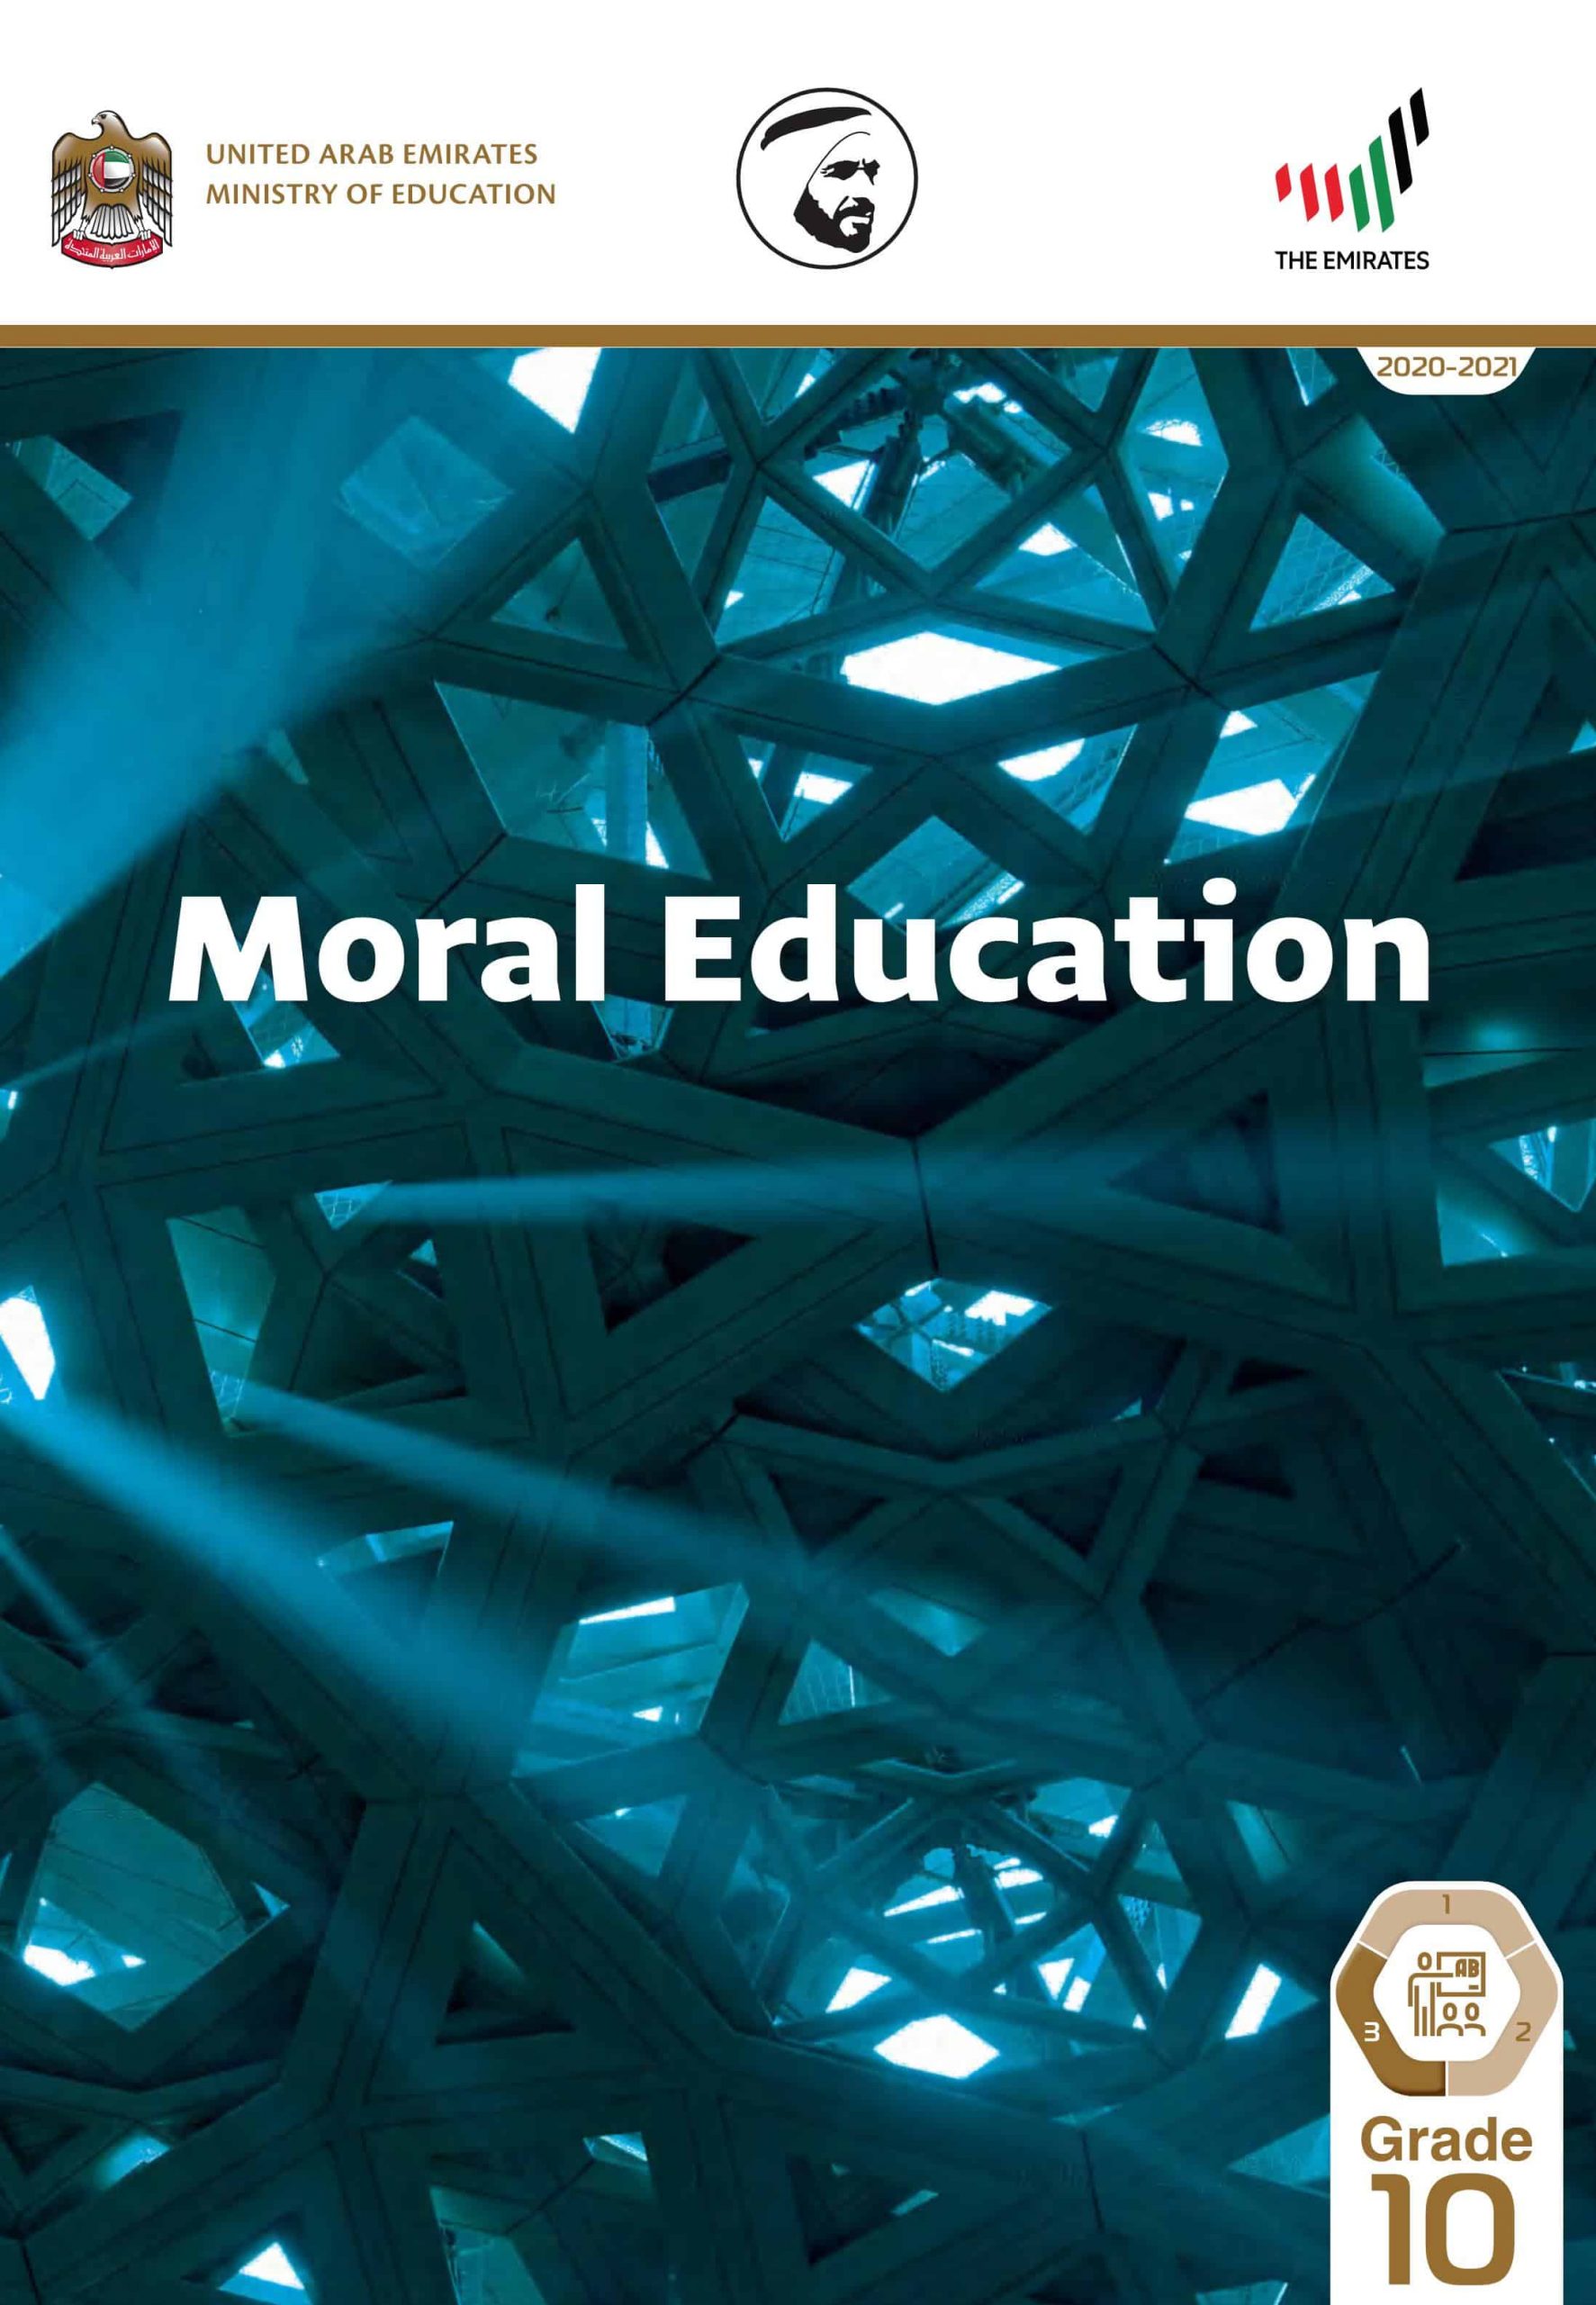 دليل المعلم بالإنجليزي الفصل الدراسي الثالث 2020-2021 الصف العاشر مادة التربية الأخلاقية